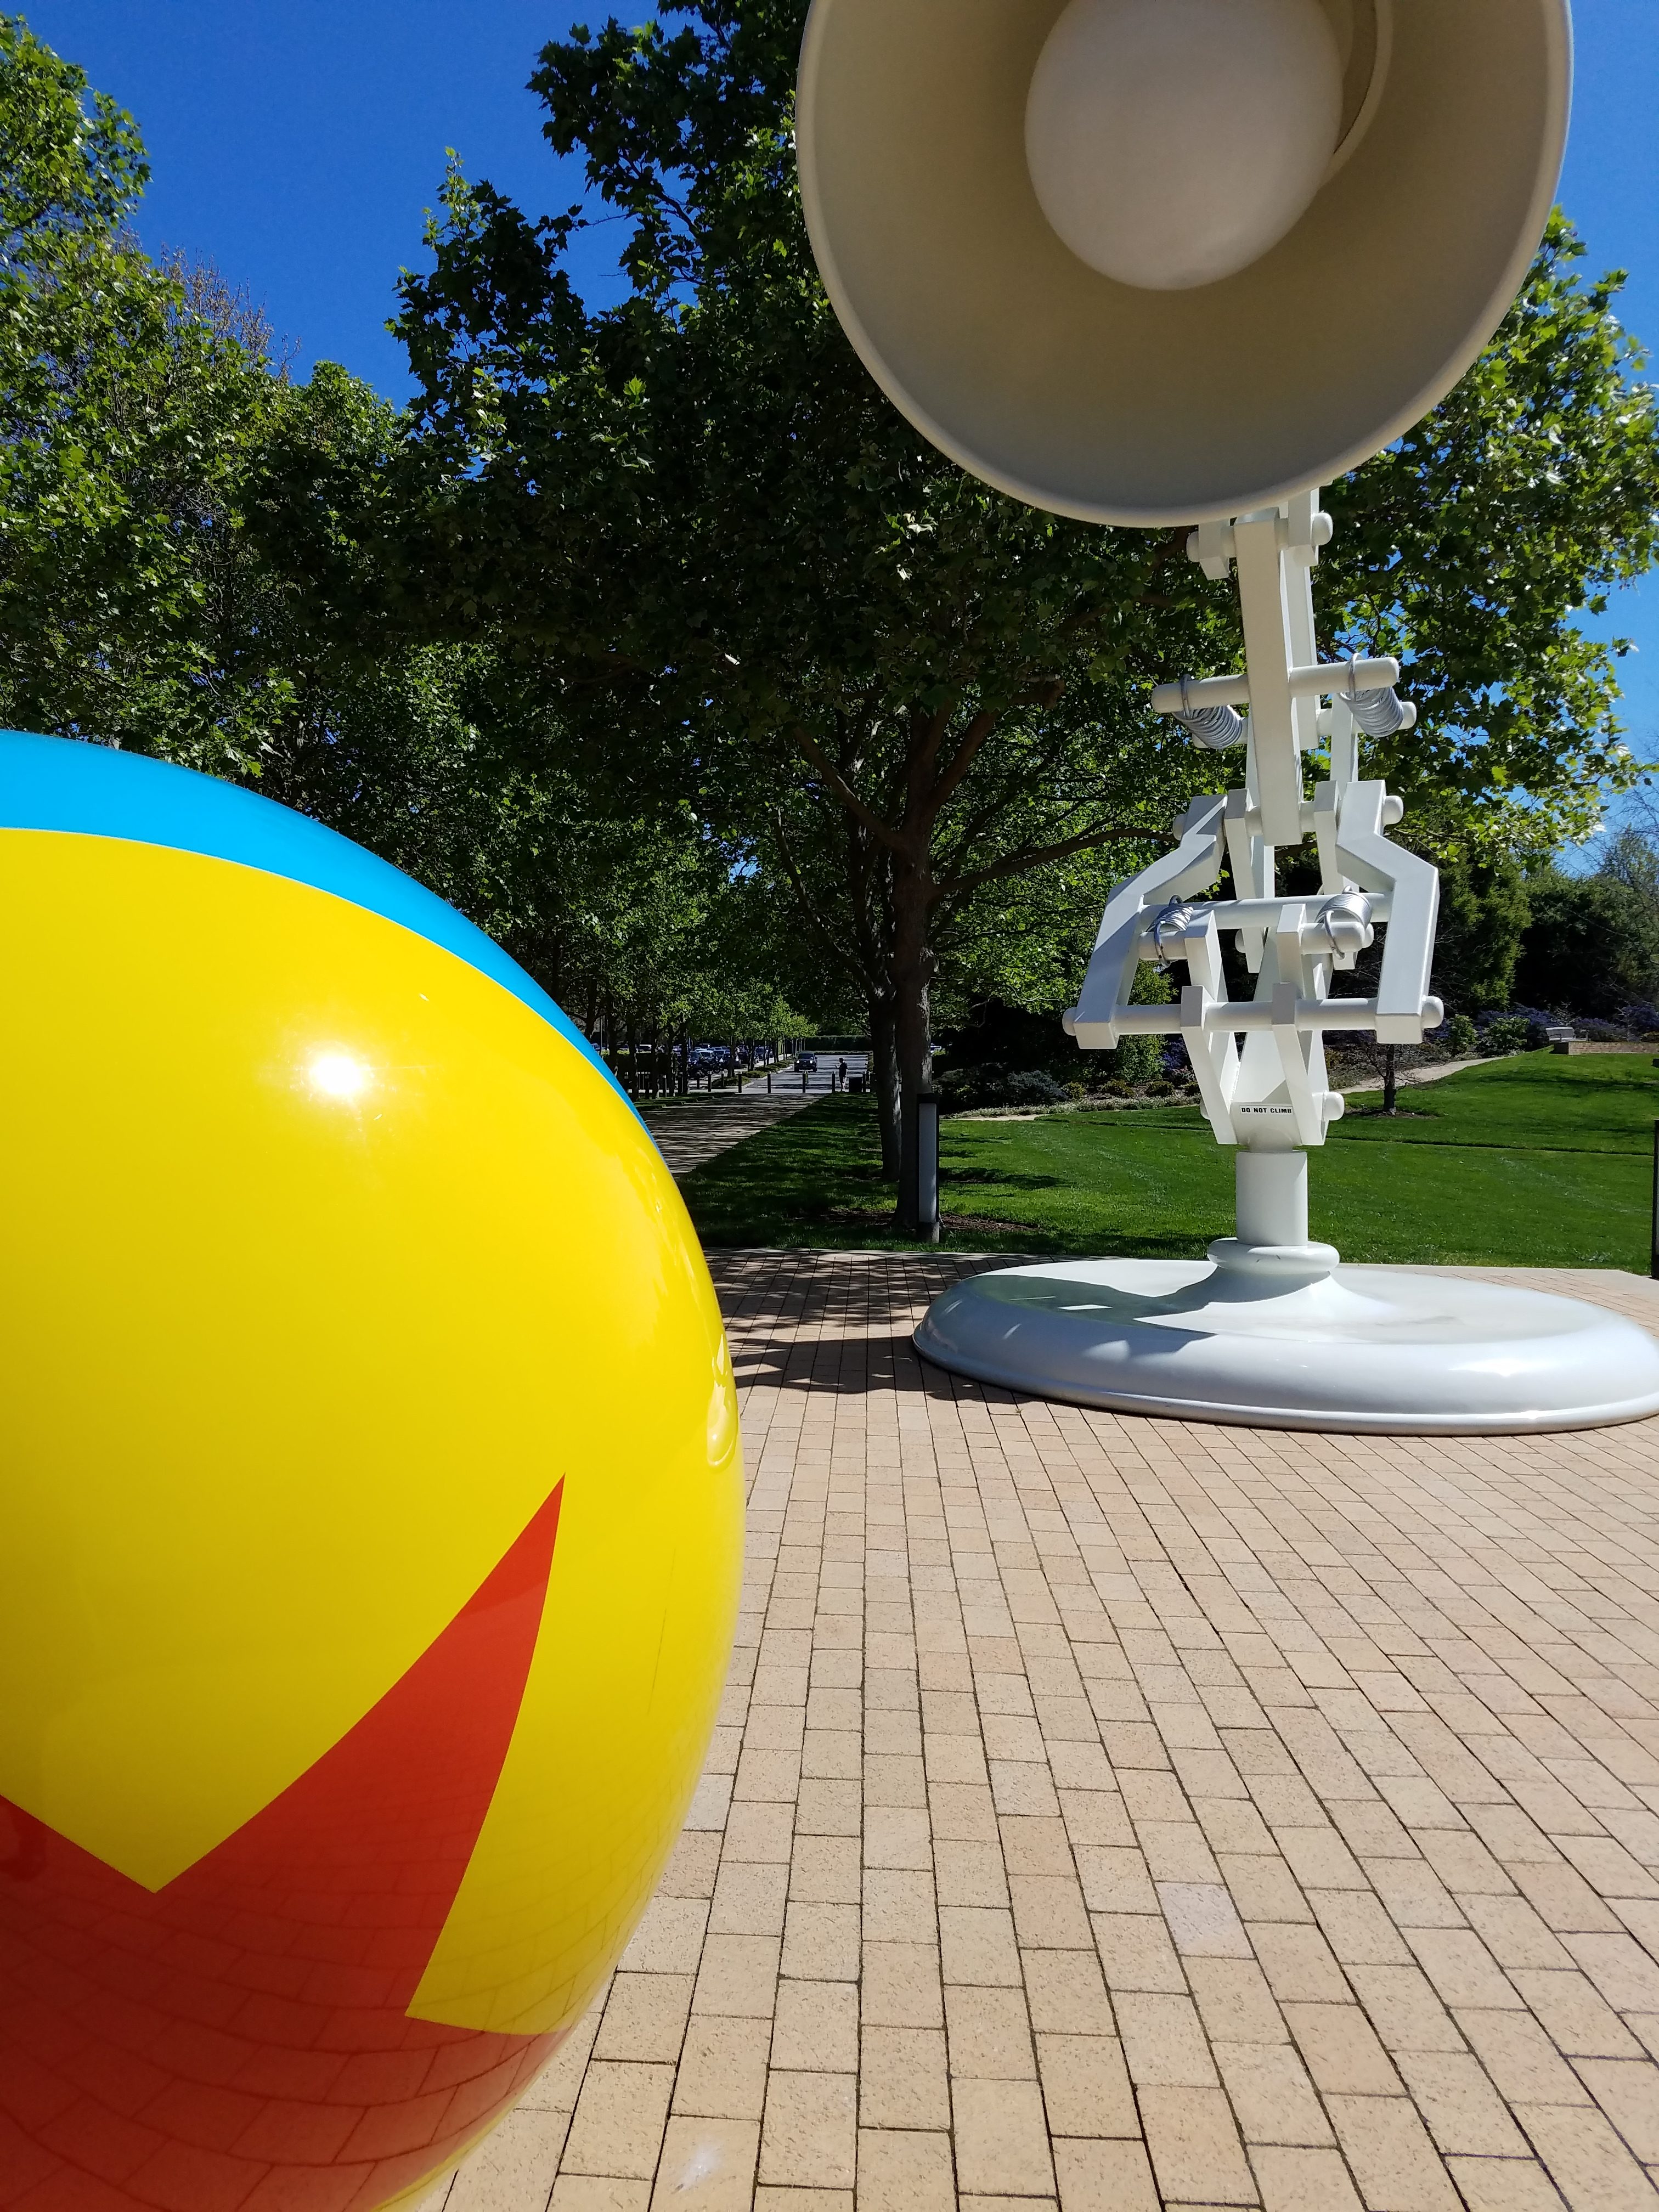 pixar ball and lamp